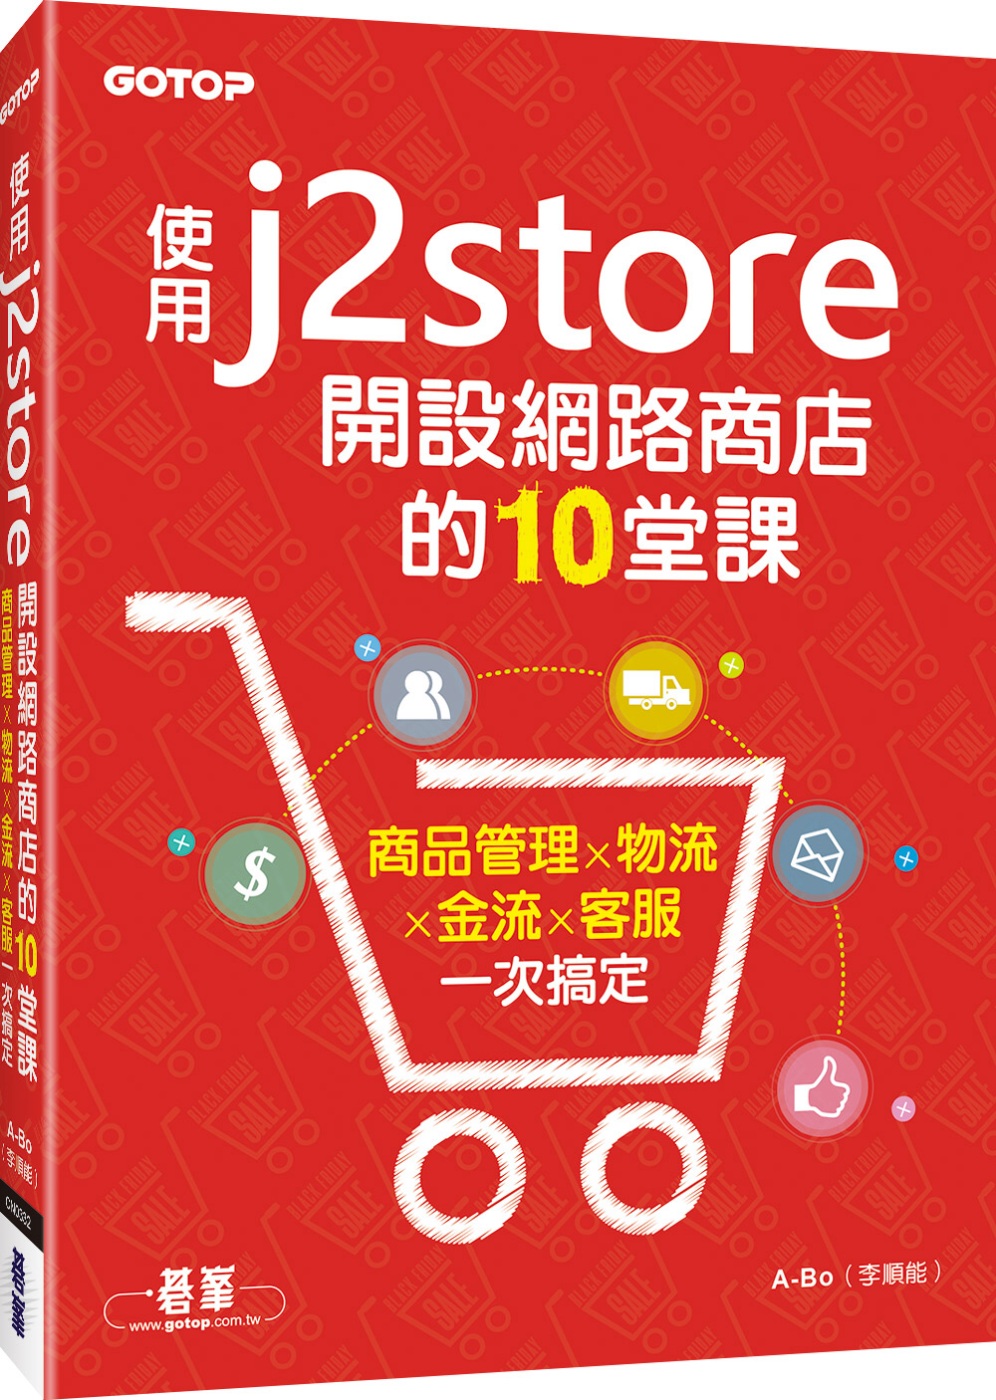 使用J2Store開設網路商店的10堂課：商品管理x物流x金...